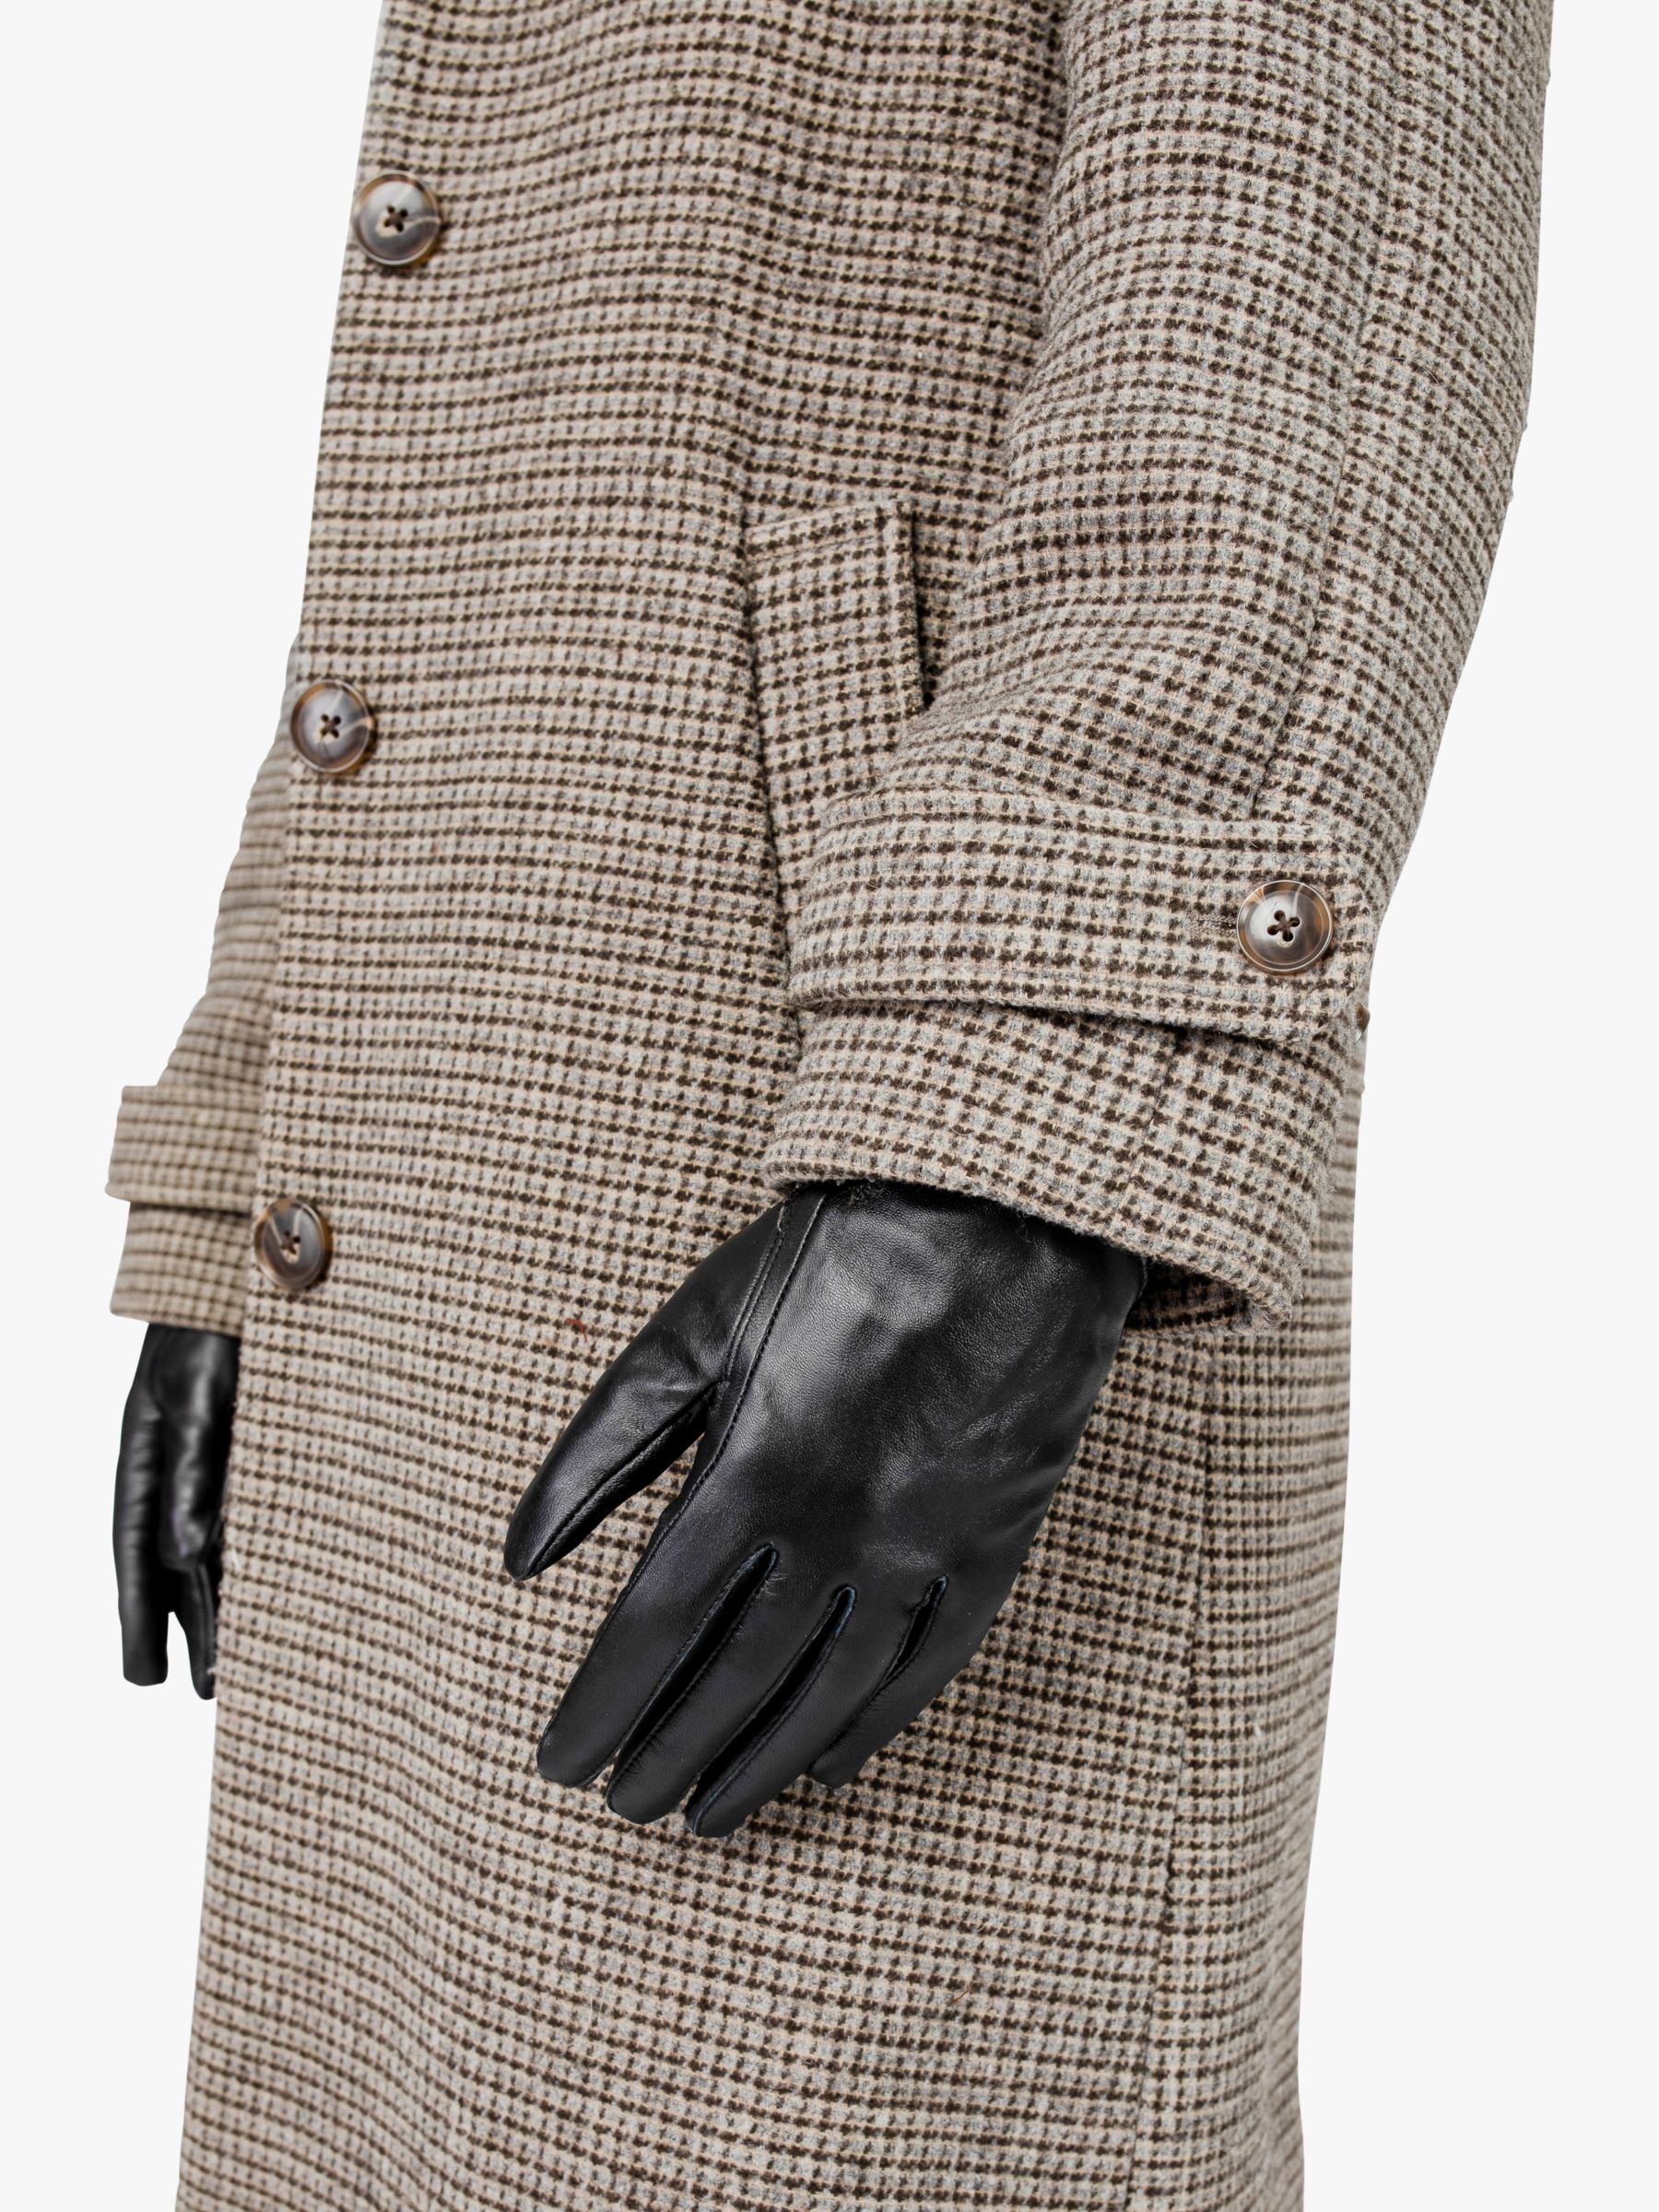 Buy Bloom & Bay Carbis Leather Gloves, Black Online at johnlewis.com